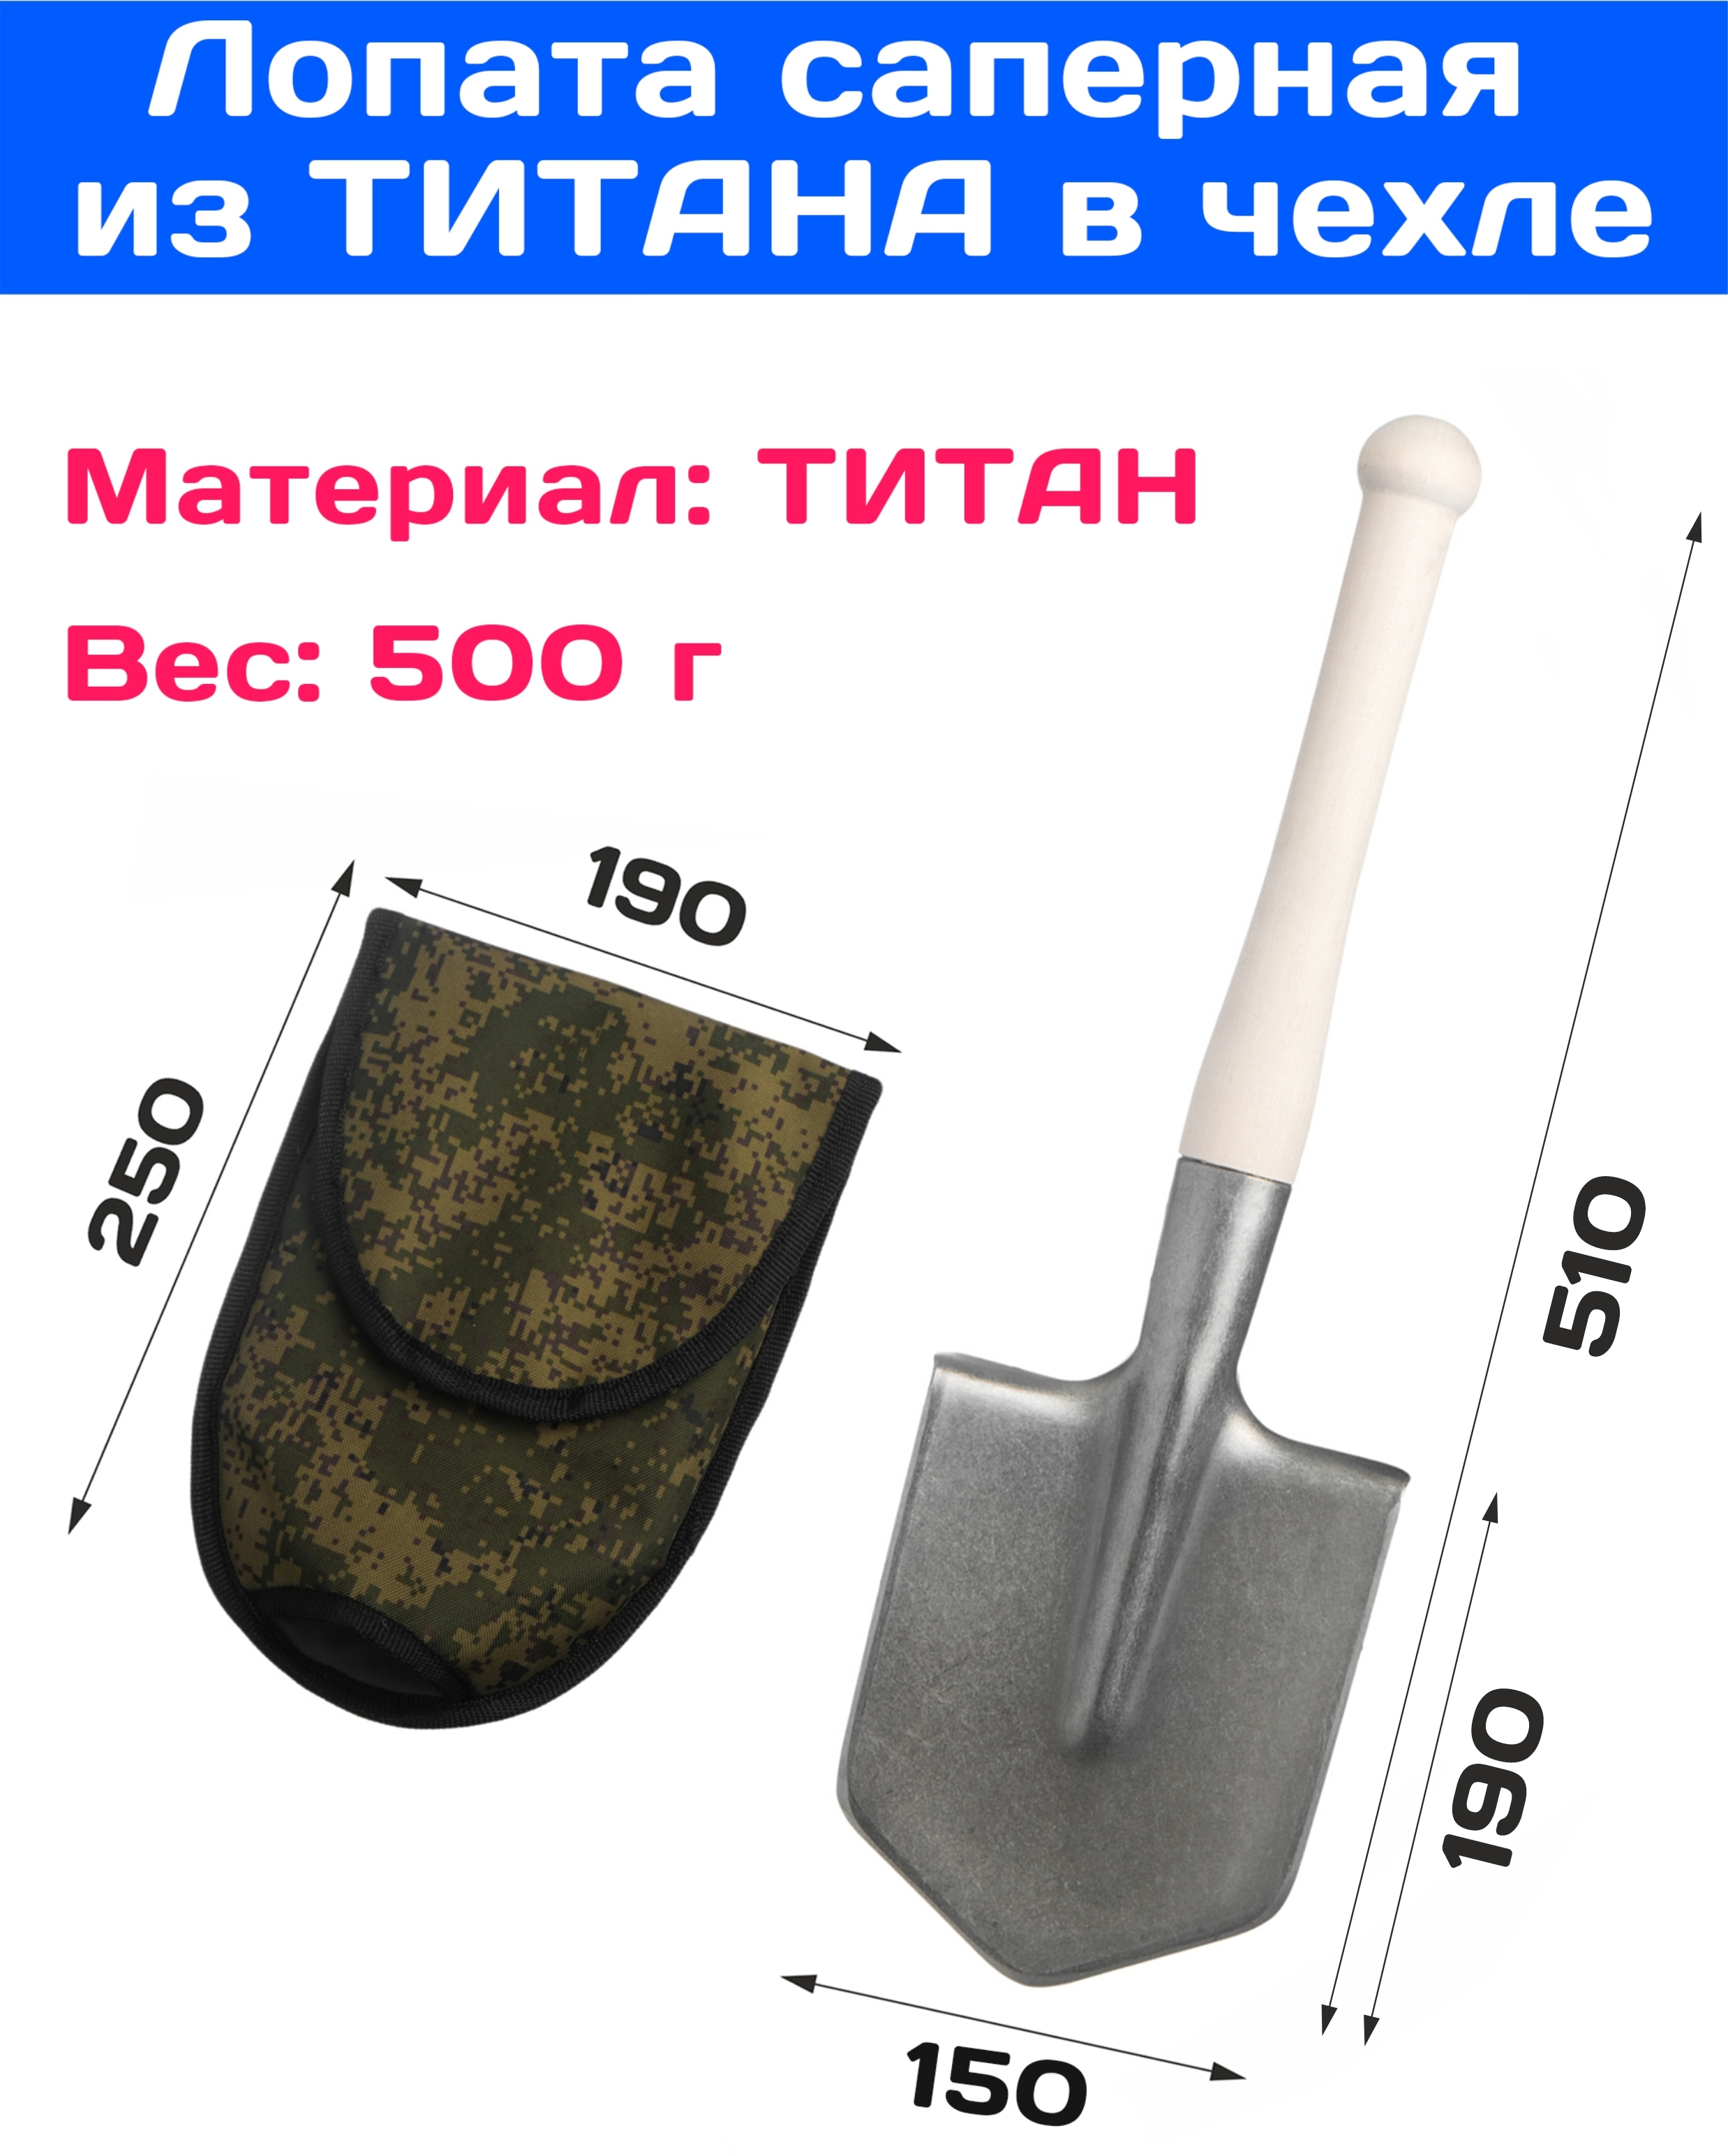 OLX.ua - объявления в Украине - лопата саперная